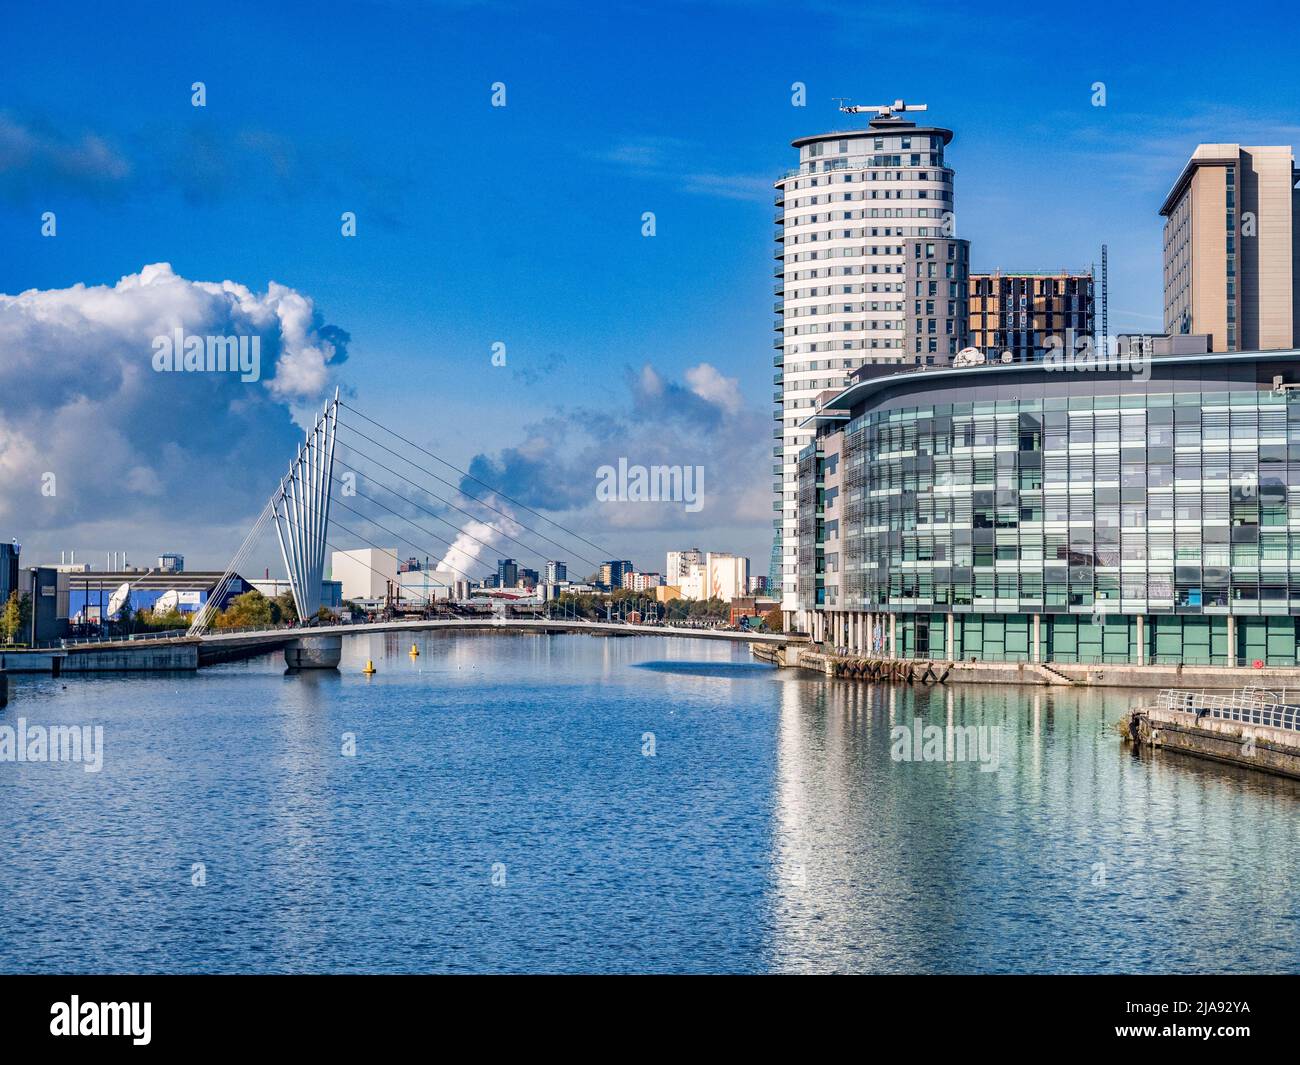 2 novembre 2018: Salford Quays, Manchester, Regno Unito - Media City Footbridge, e Manchester Ship Canal, in una bella mattinata di sole invernale. Foto Stock